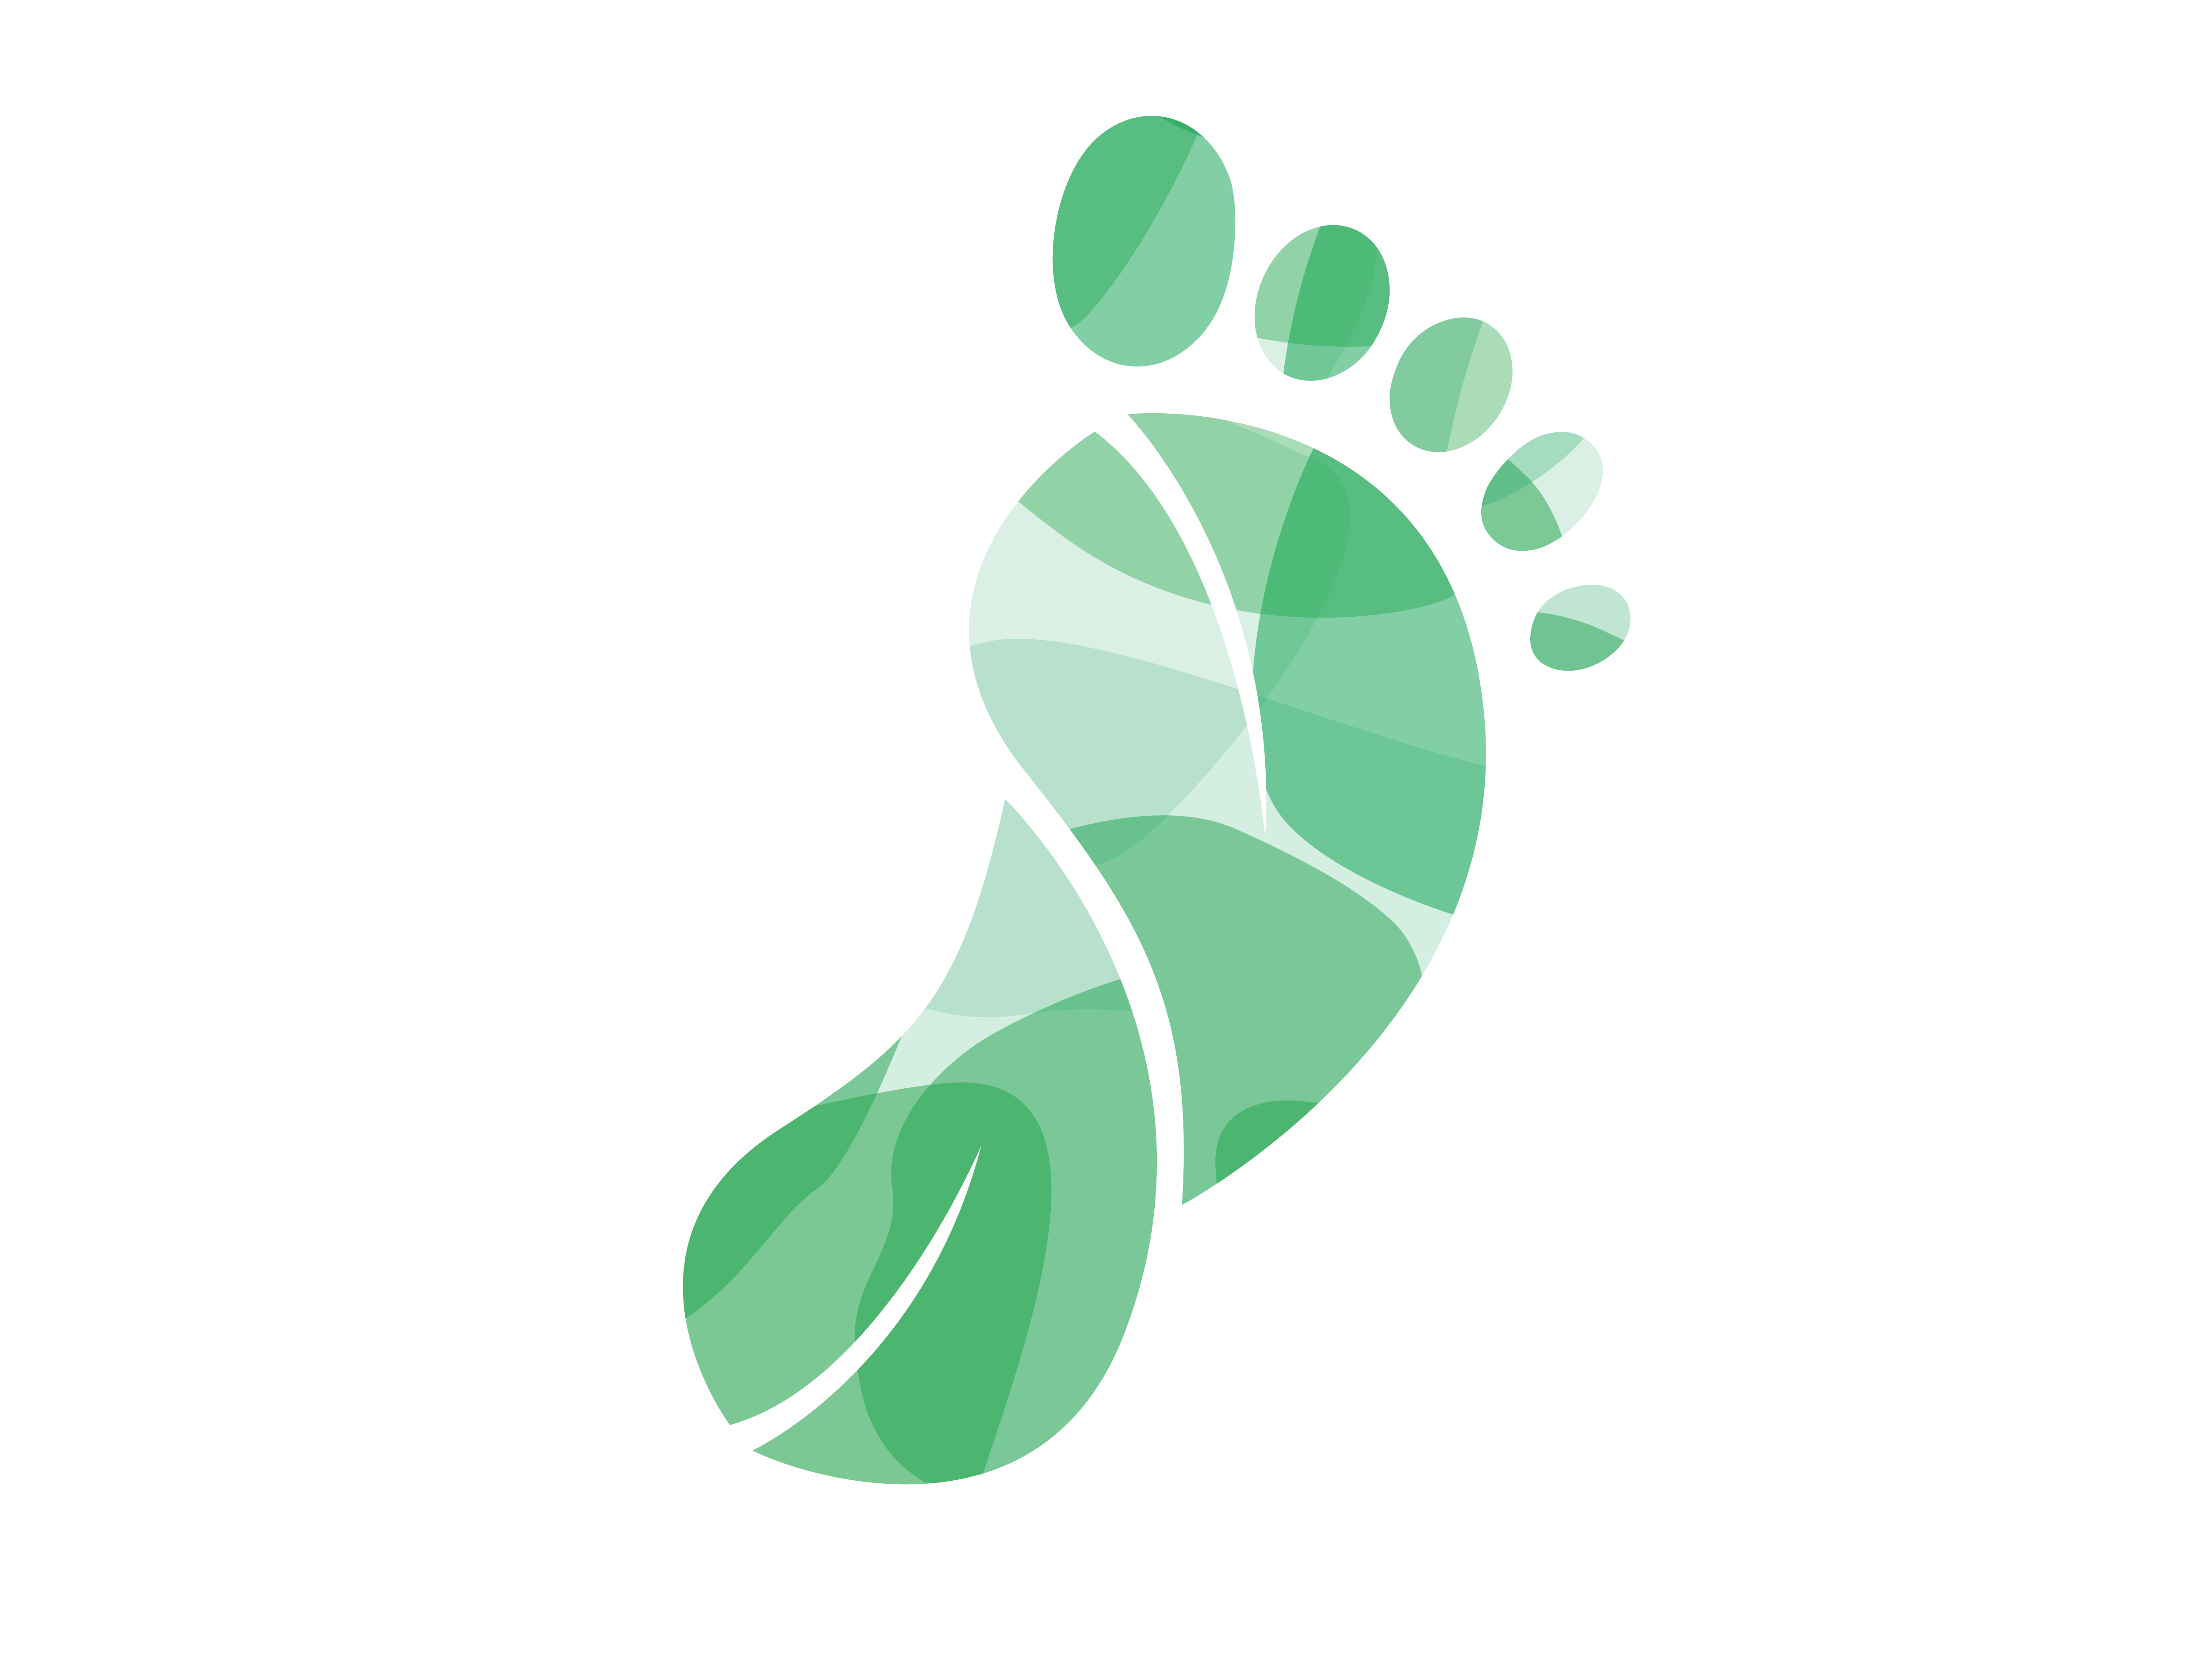 Green footprint illustration